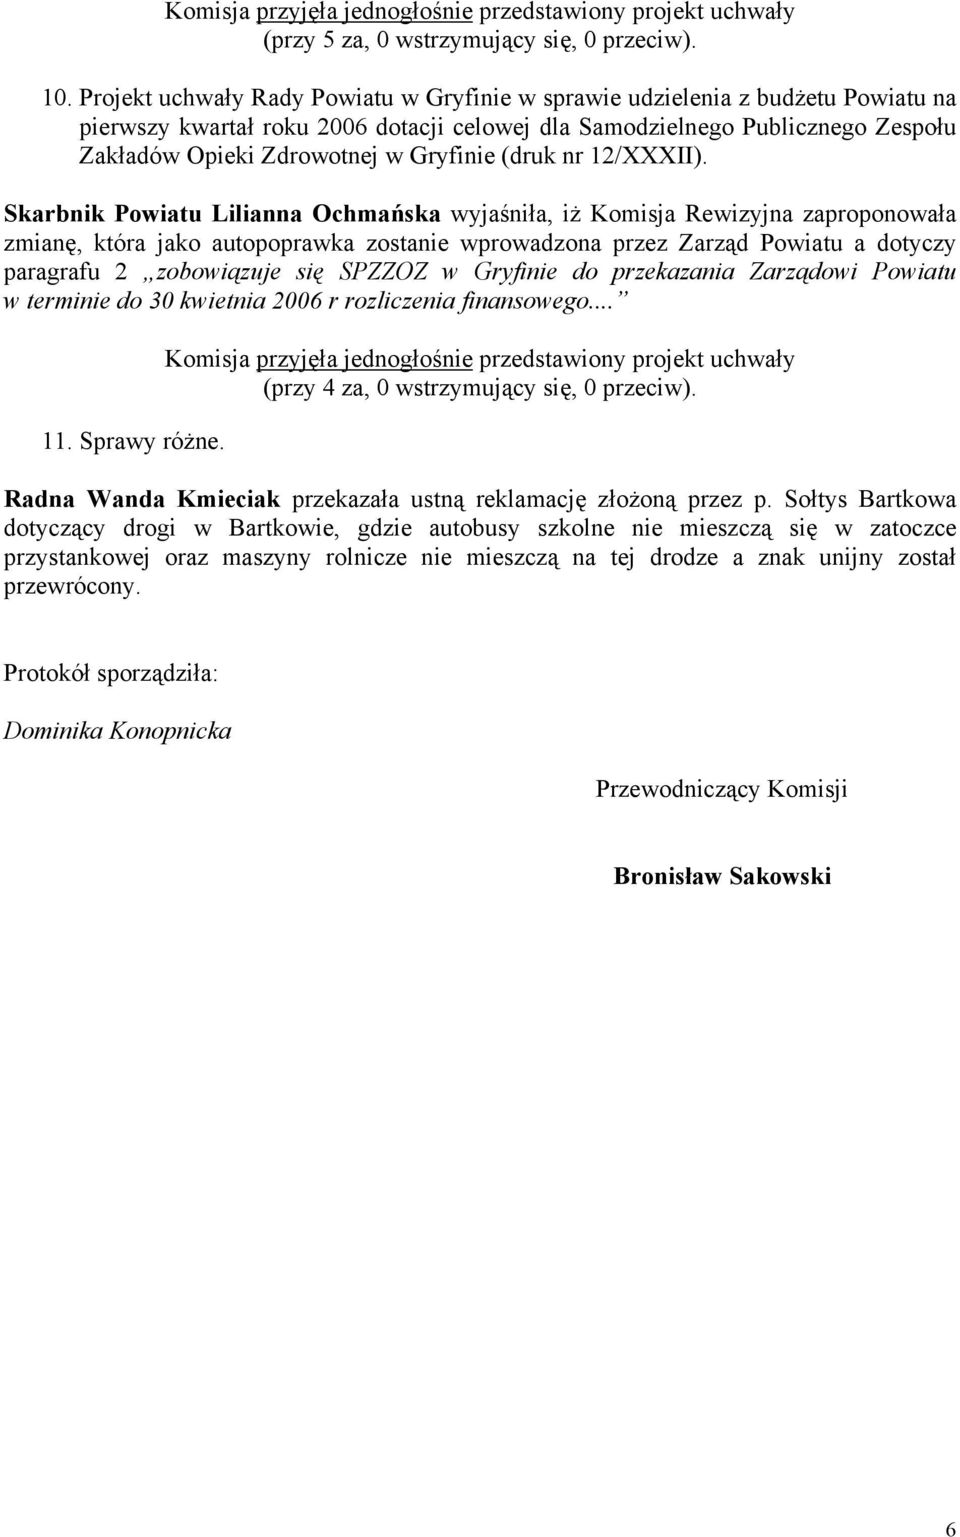 Skarbnik Powiatu Lilianna Ochmańska wyjaśniła, iż Komisja Rewizyjna zaproponowała zmianę, która jako autopoprawka zostanie wprowadzona przez Zarząd Powiatu a dotyczy paragrafu 2 zobowiązuje się